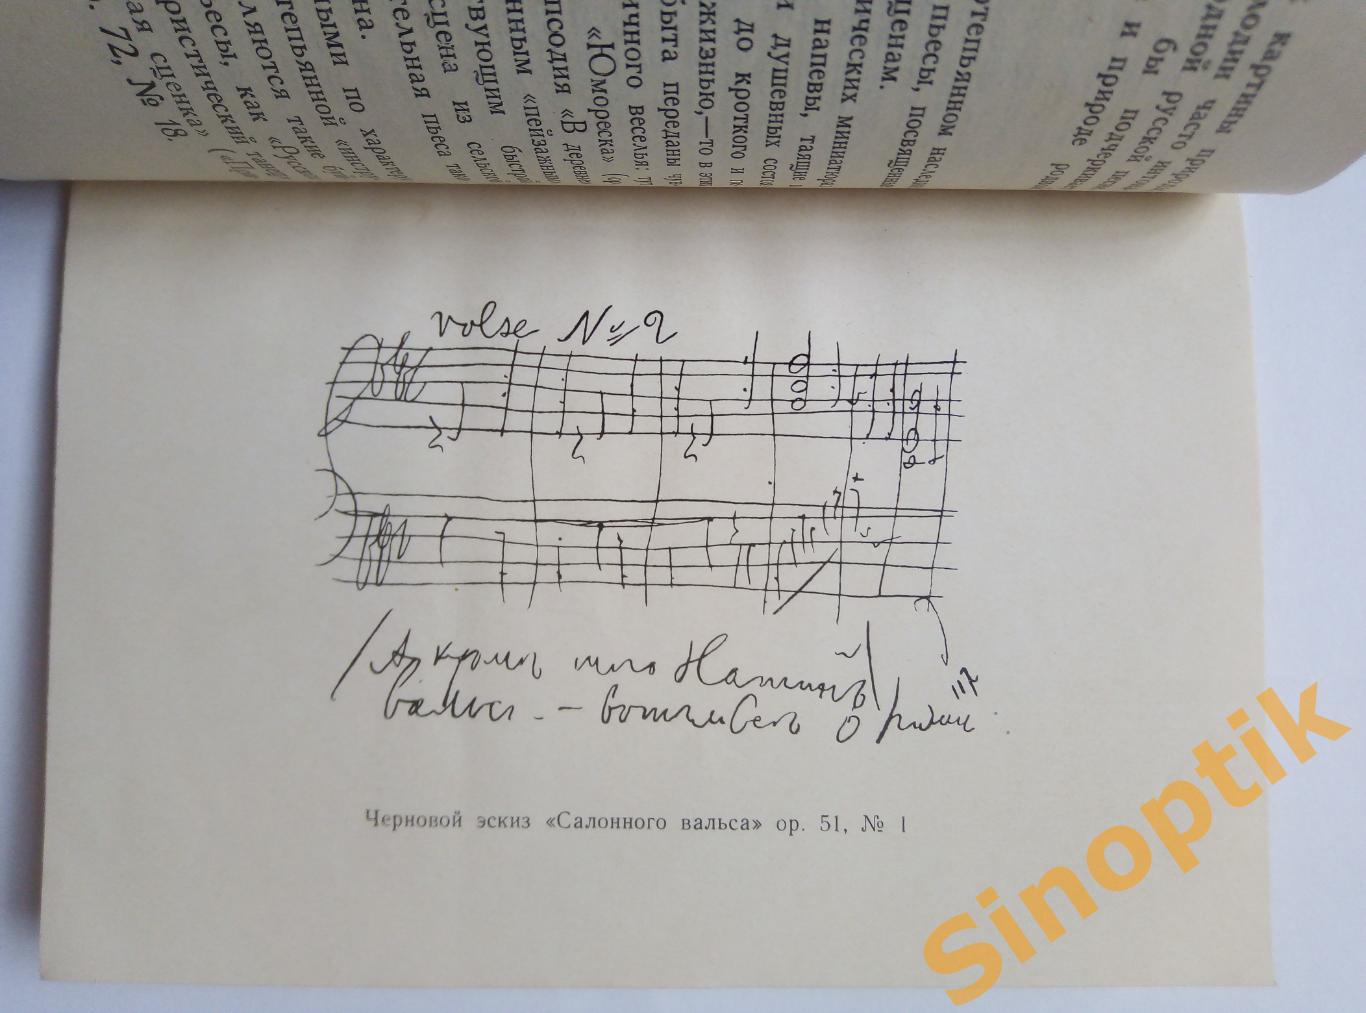 Фортепьянные произведения П. И. Чайковского, А. Николаев. 1957 4